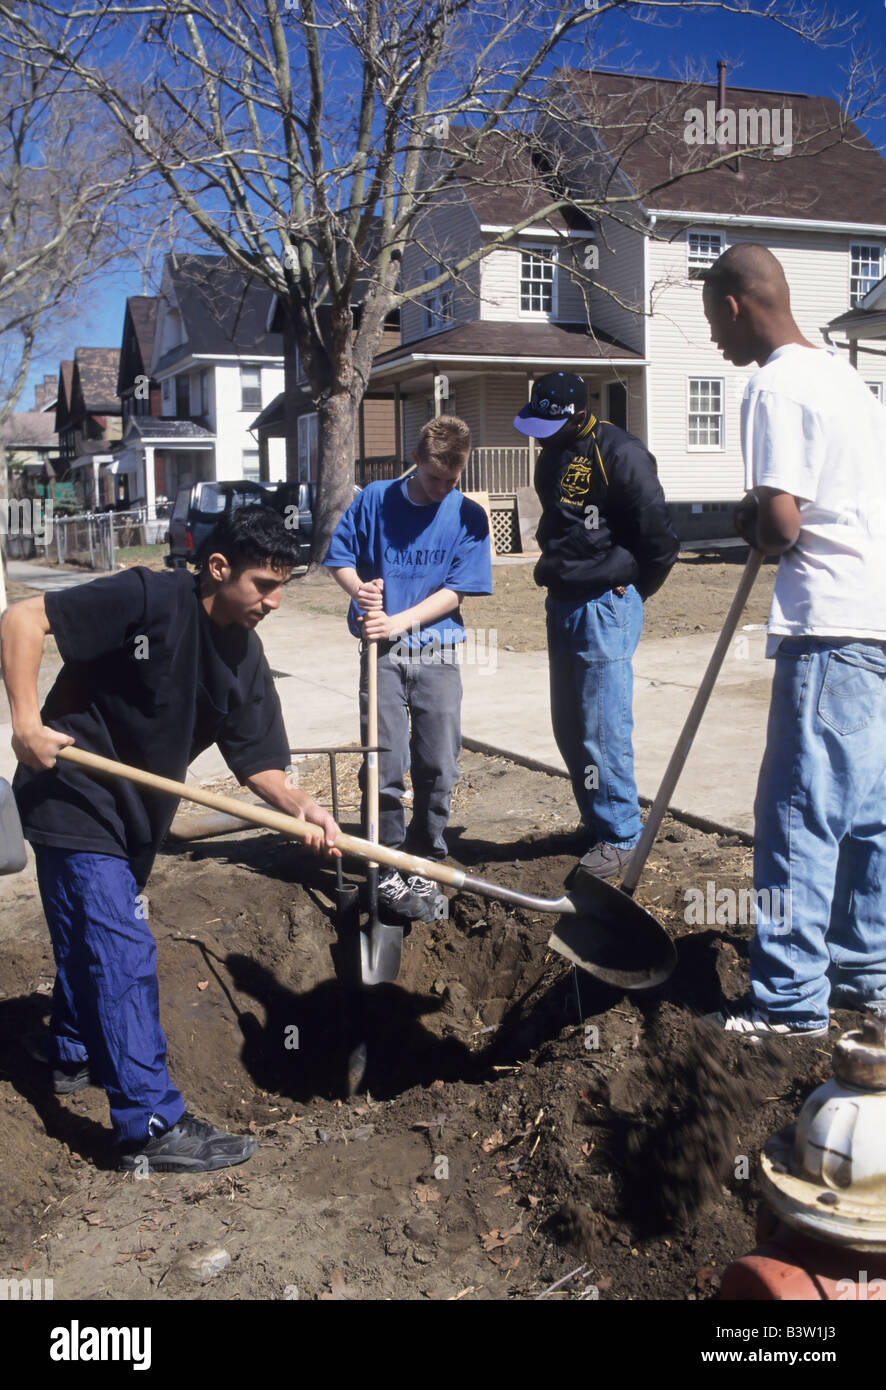 Habitat for Humanity lavoratori preparare la linea di acqua per la casa, scavare vicino marciapiede, Cleveland, Ohio usa i volontari della carità comunità Foto Stock